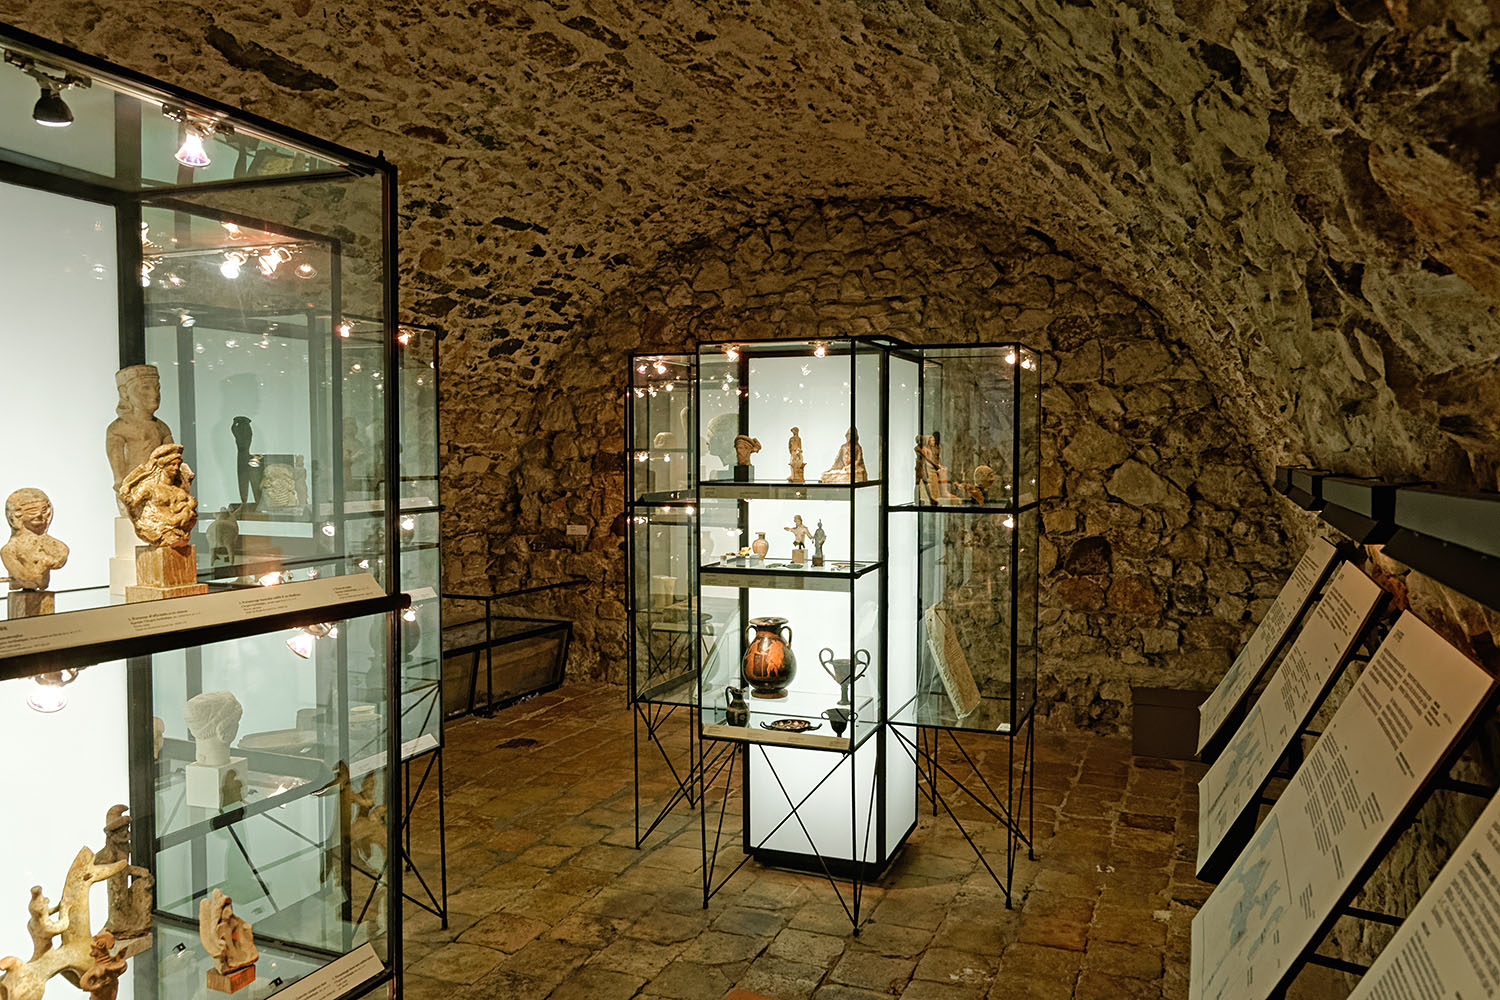 Inside the 'Musée de la Castre'